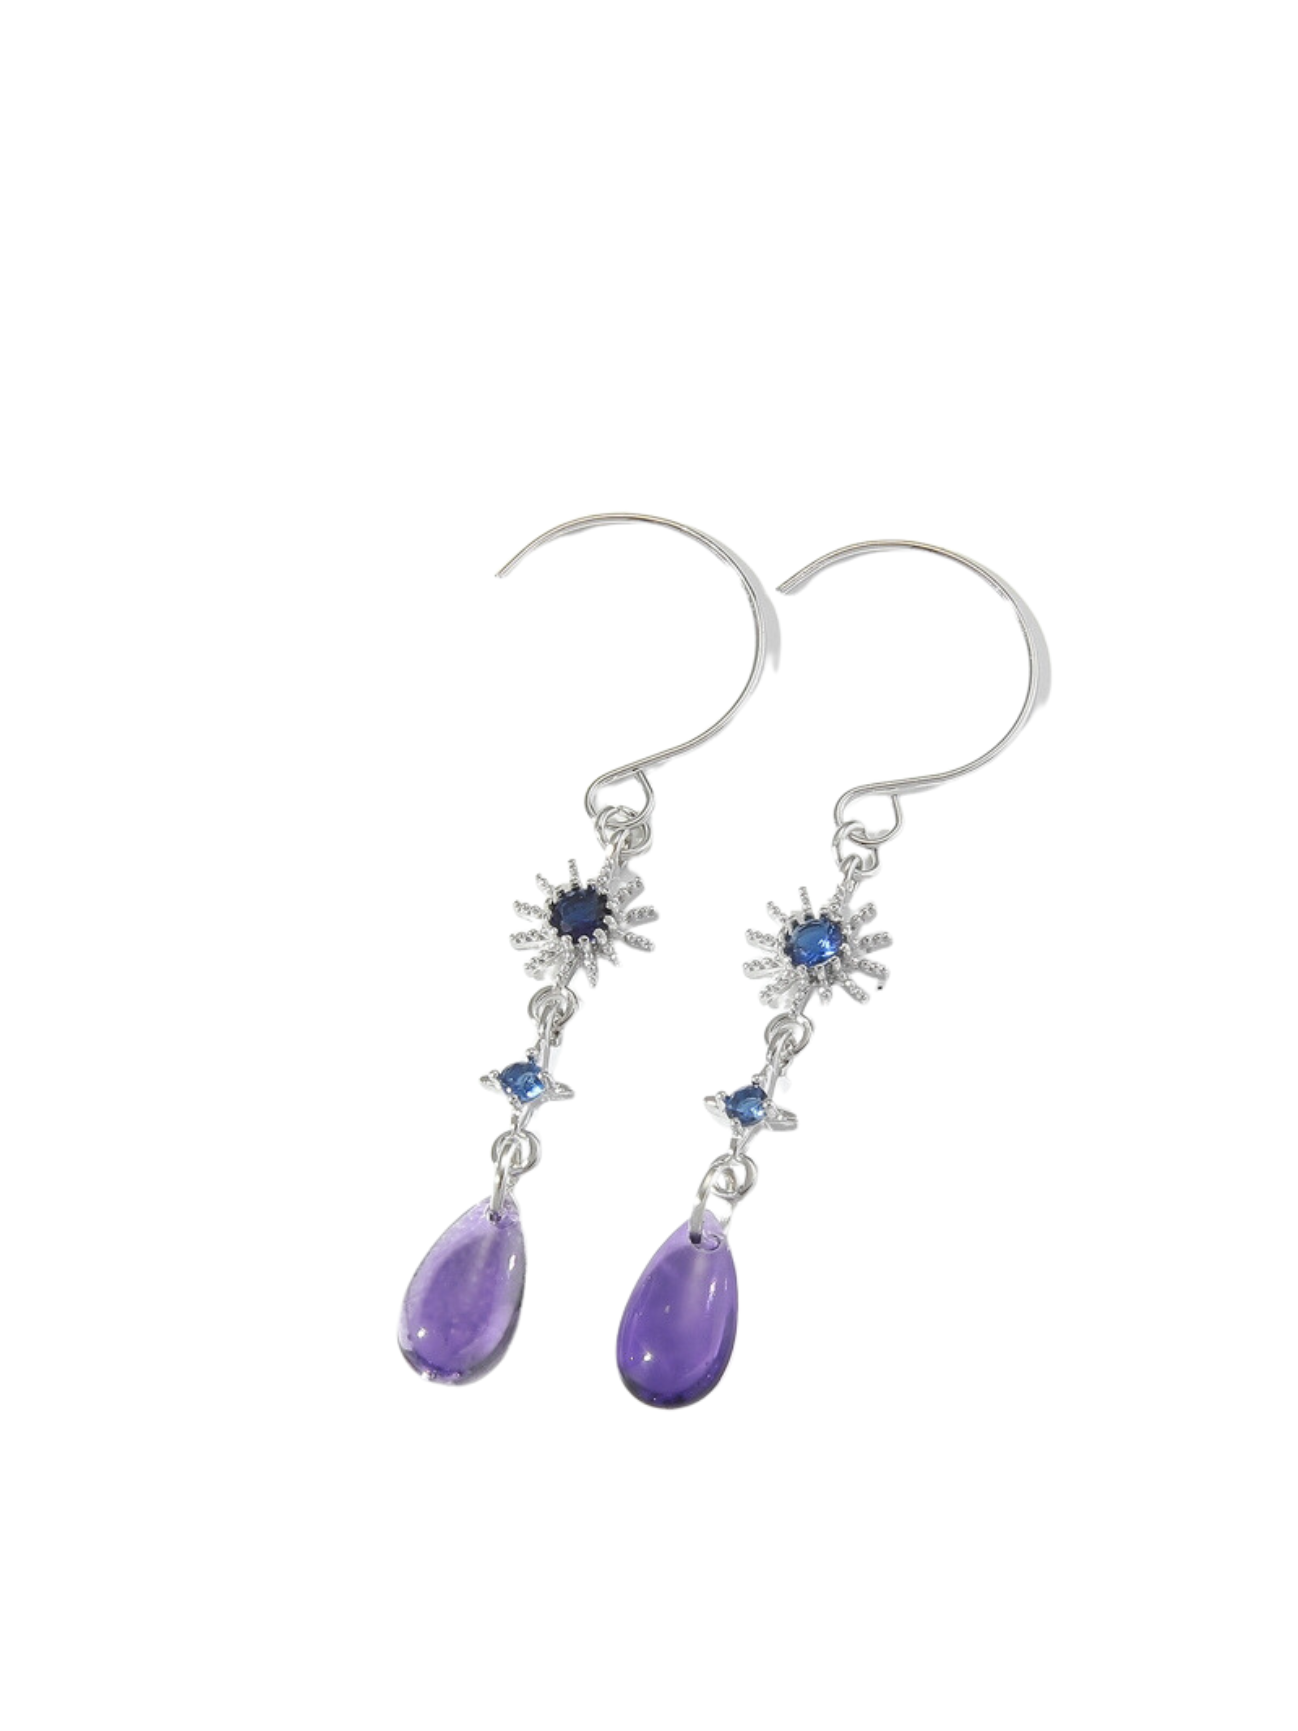 10pcs - Blue Sun Crystal and Purple Water Drop Pendant Earrings|GCJ410|UK seller